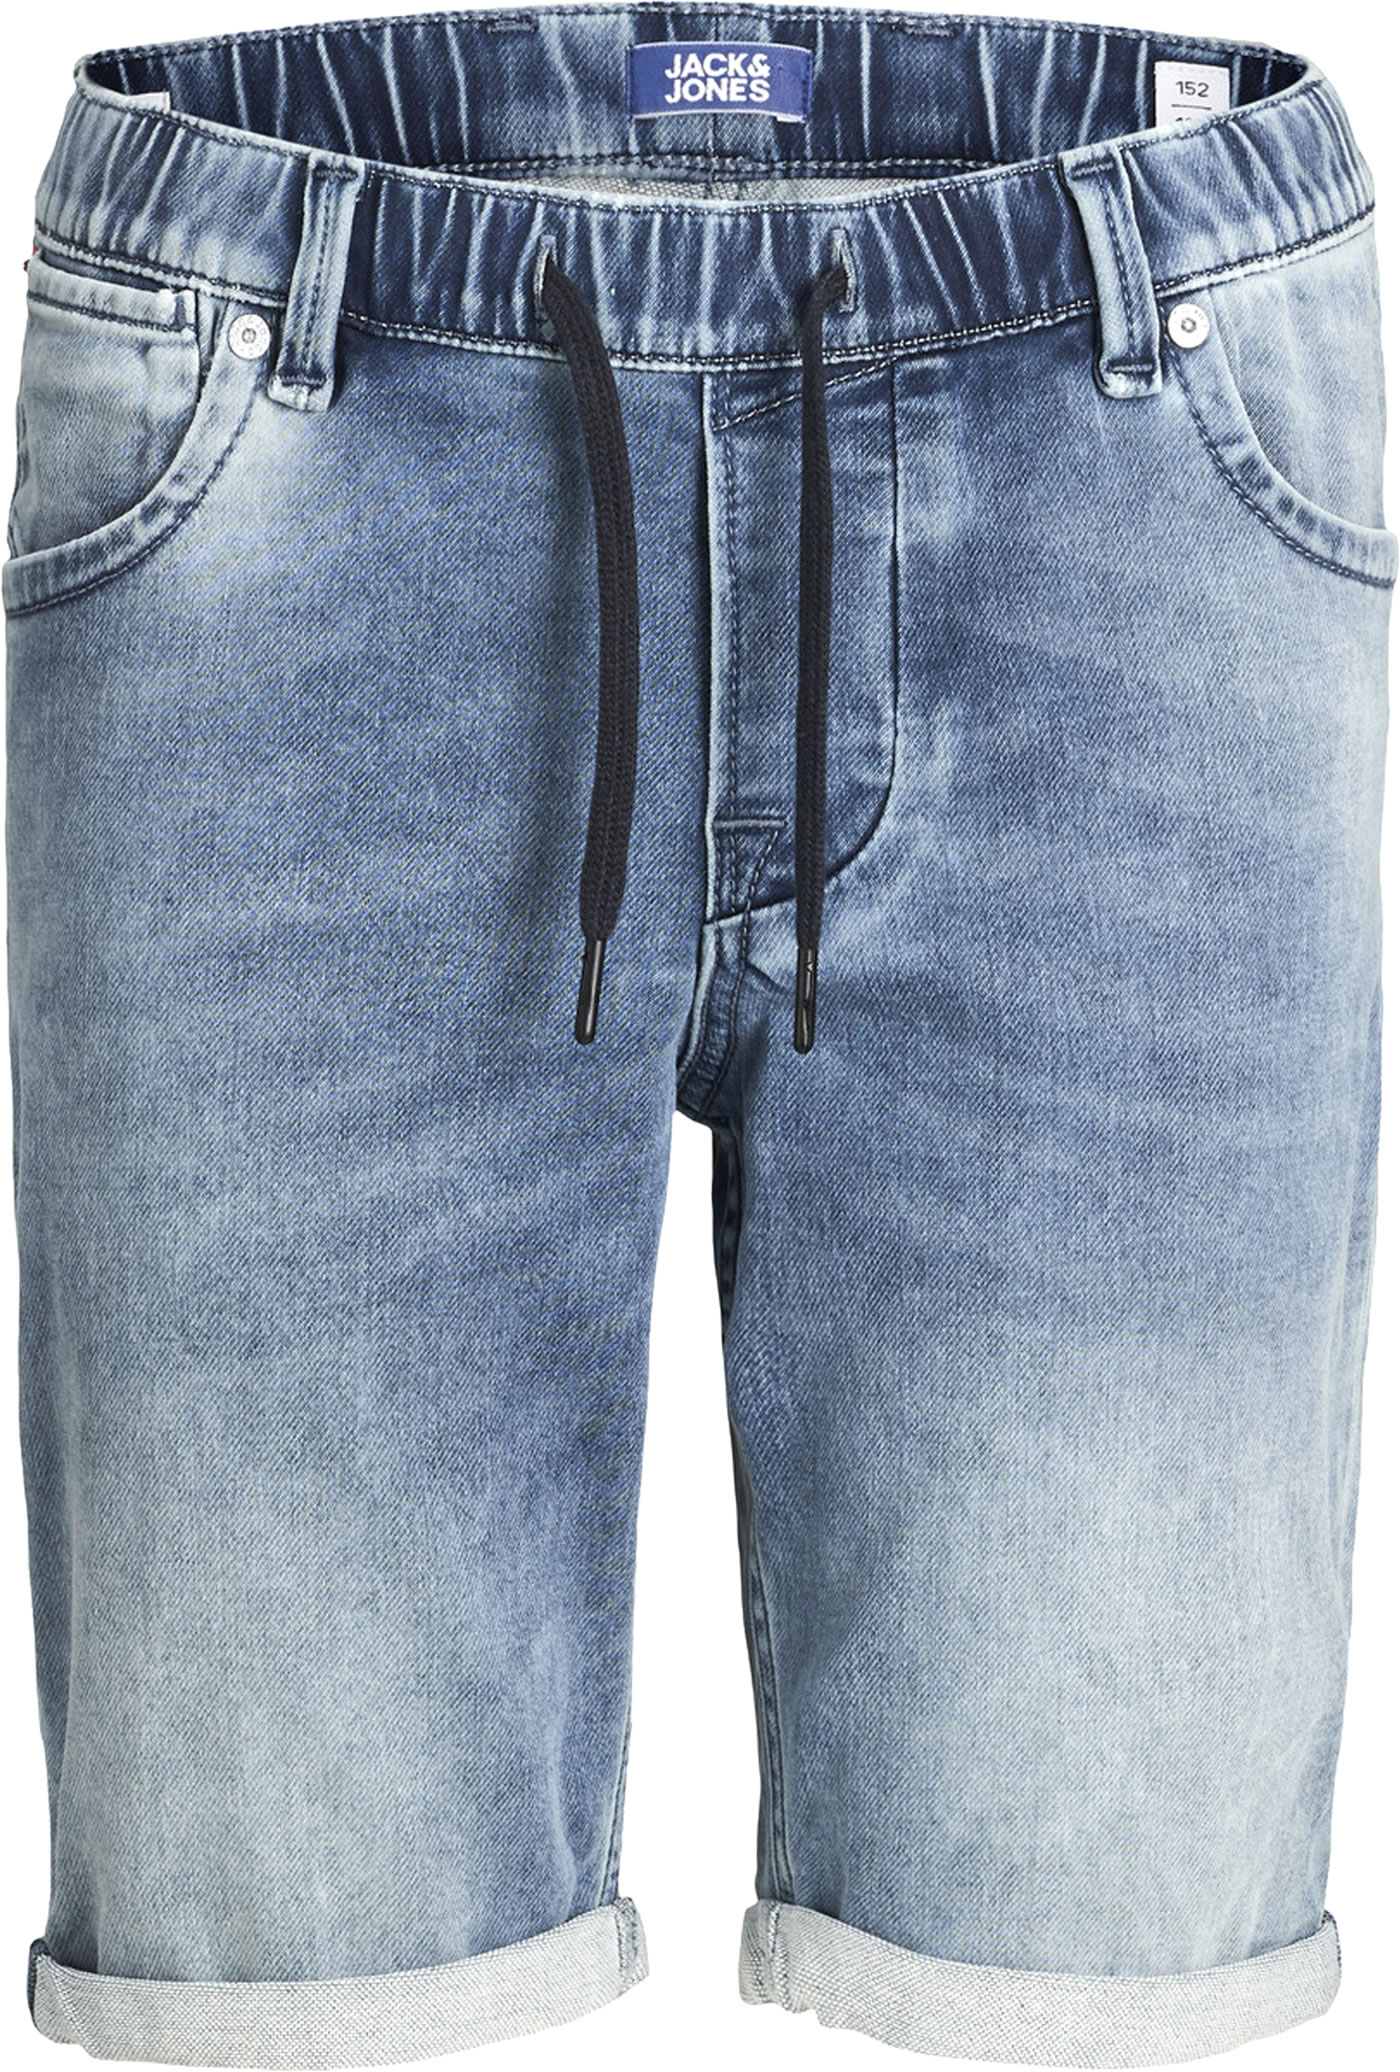 Nützlich Steckdose Insgesamt jeans shorts 152 Sich ausruhen Lehm ...